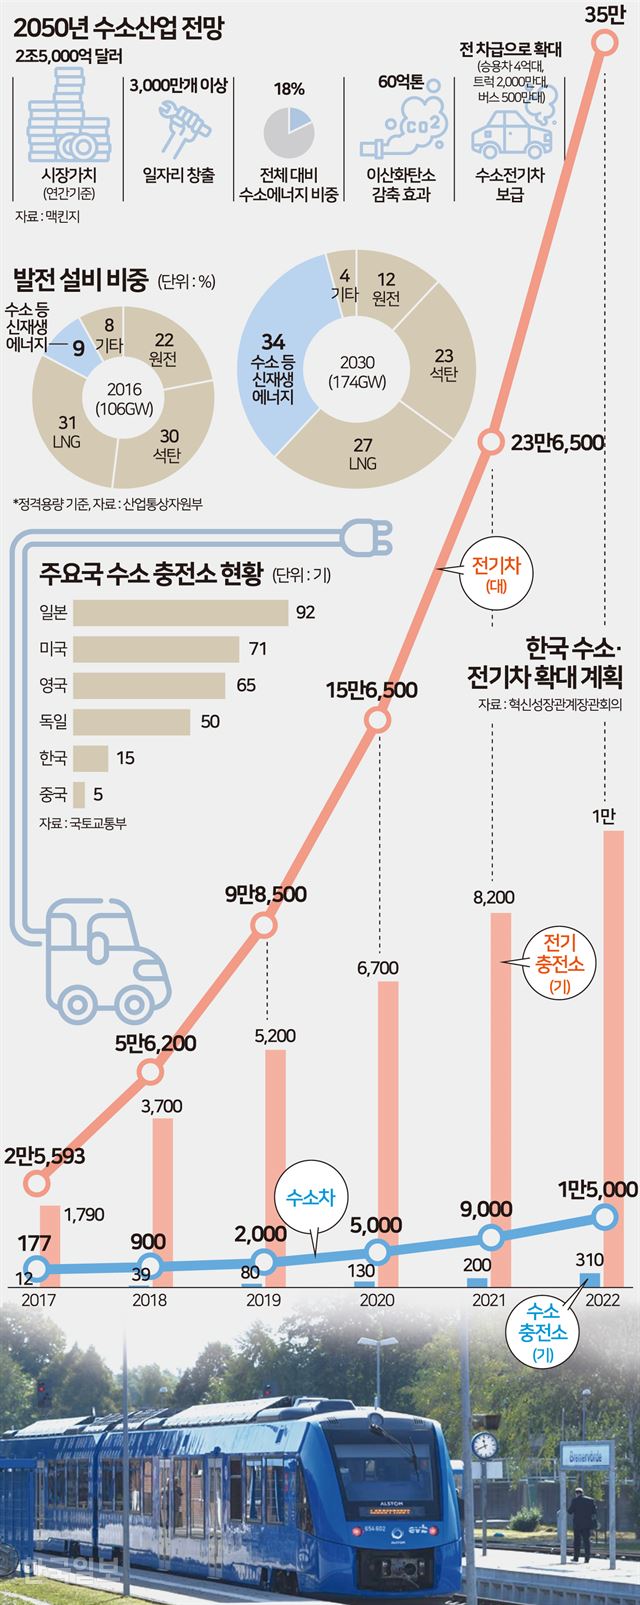 한국수소 전기차 확대 계획=그래픽 송정근기자